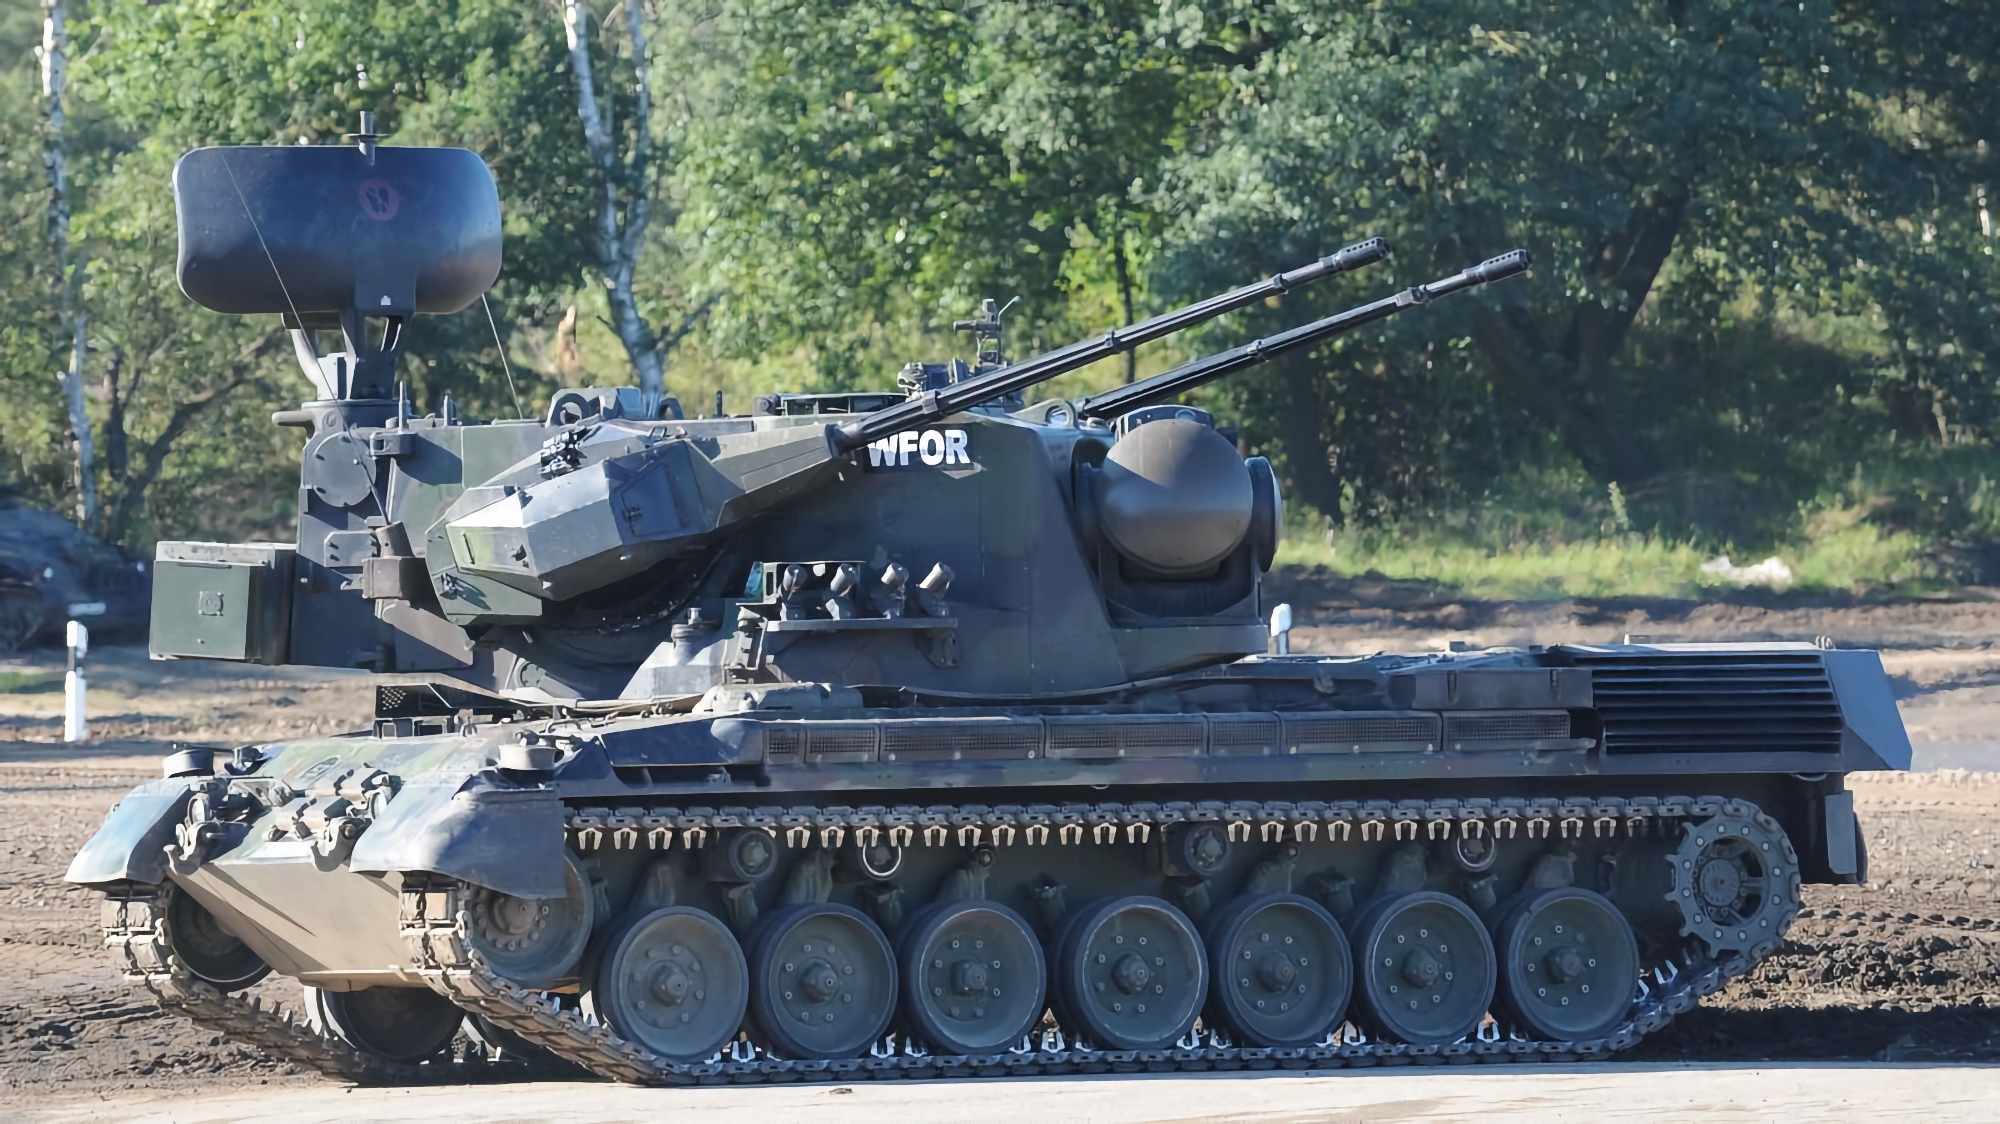 L'Allemagne transfère des chars antiaériens Gepard supplémentaires à l'Ukraine